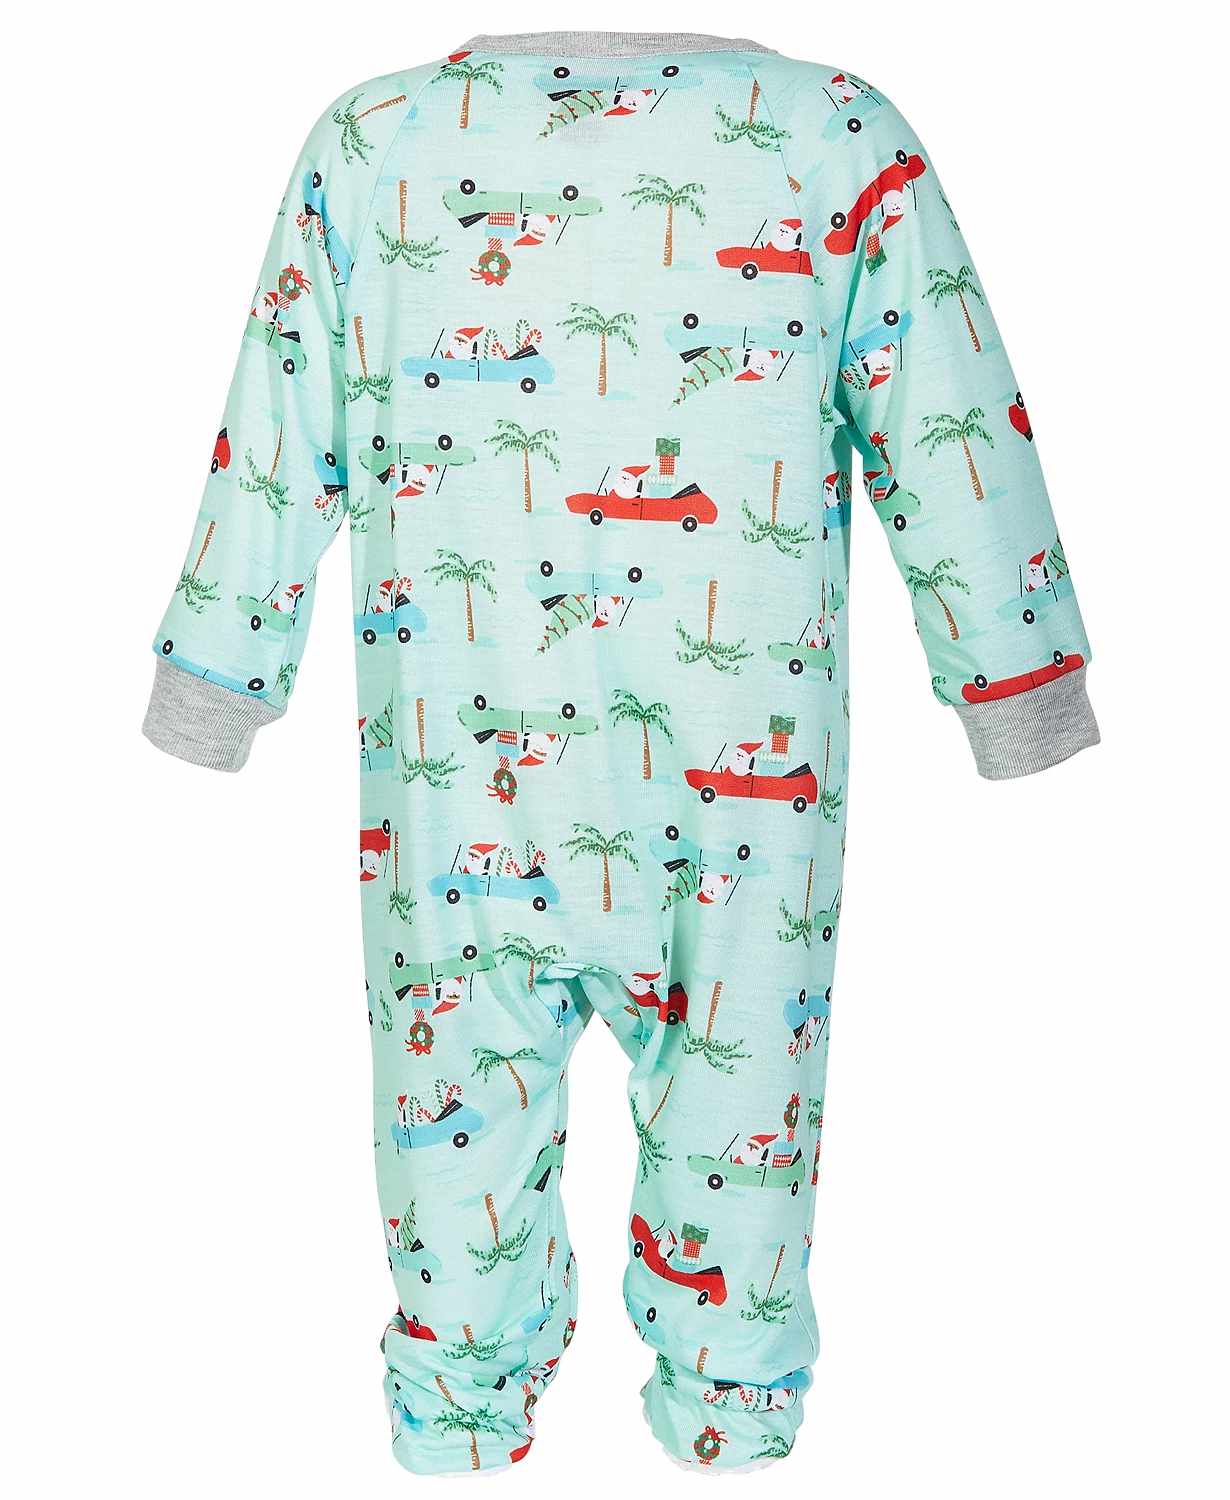 Family Pajamas Baby Matching Tropical Santa Printed Footed Pajama